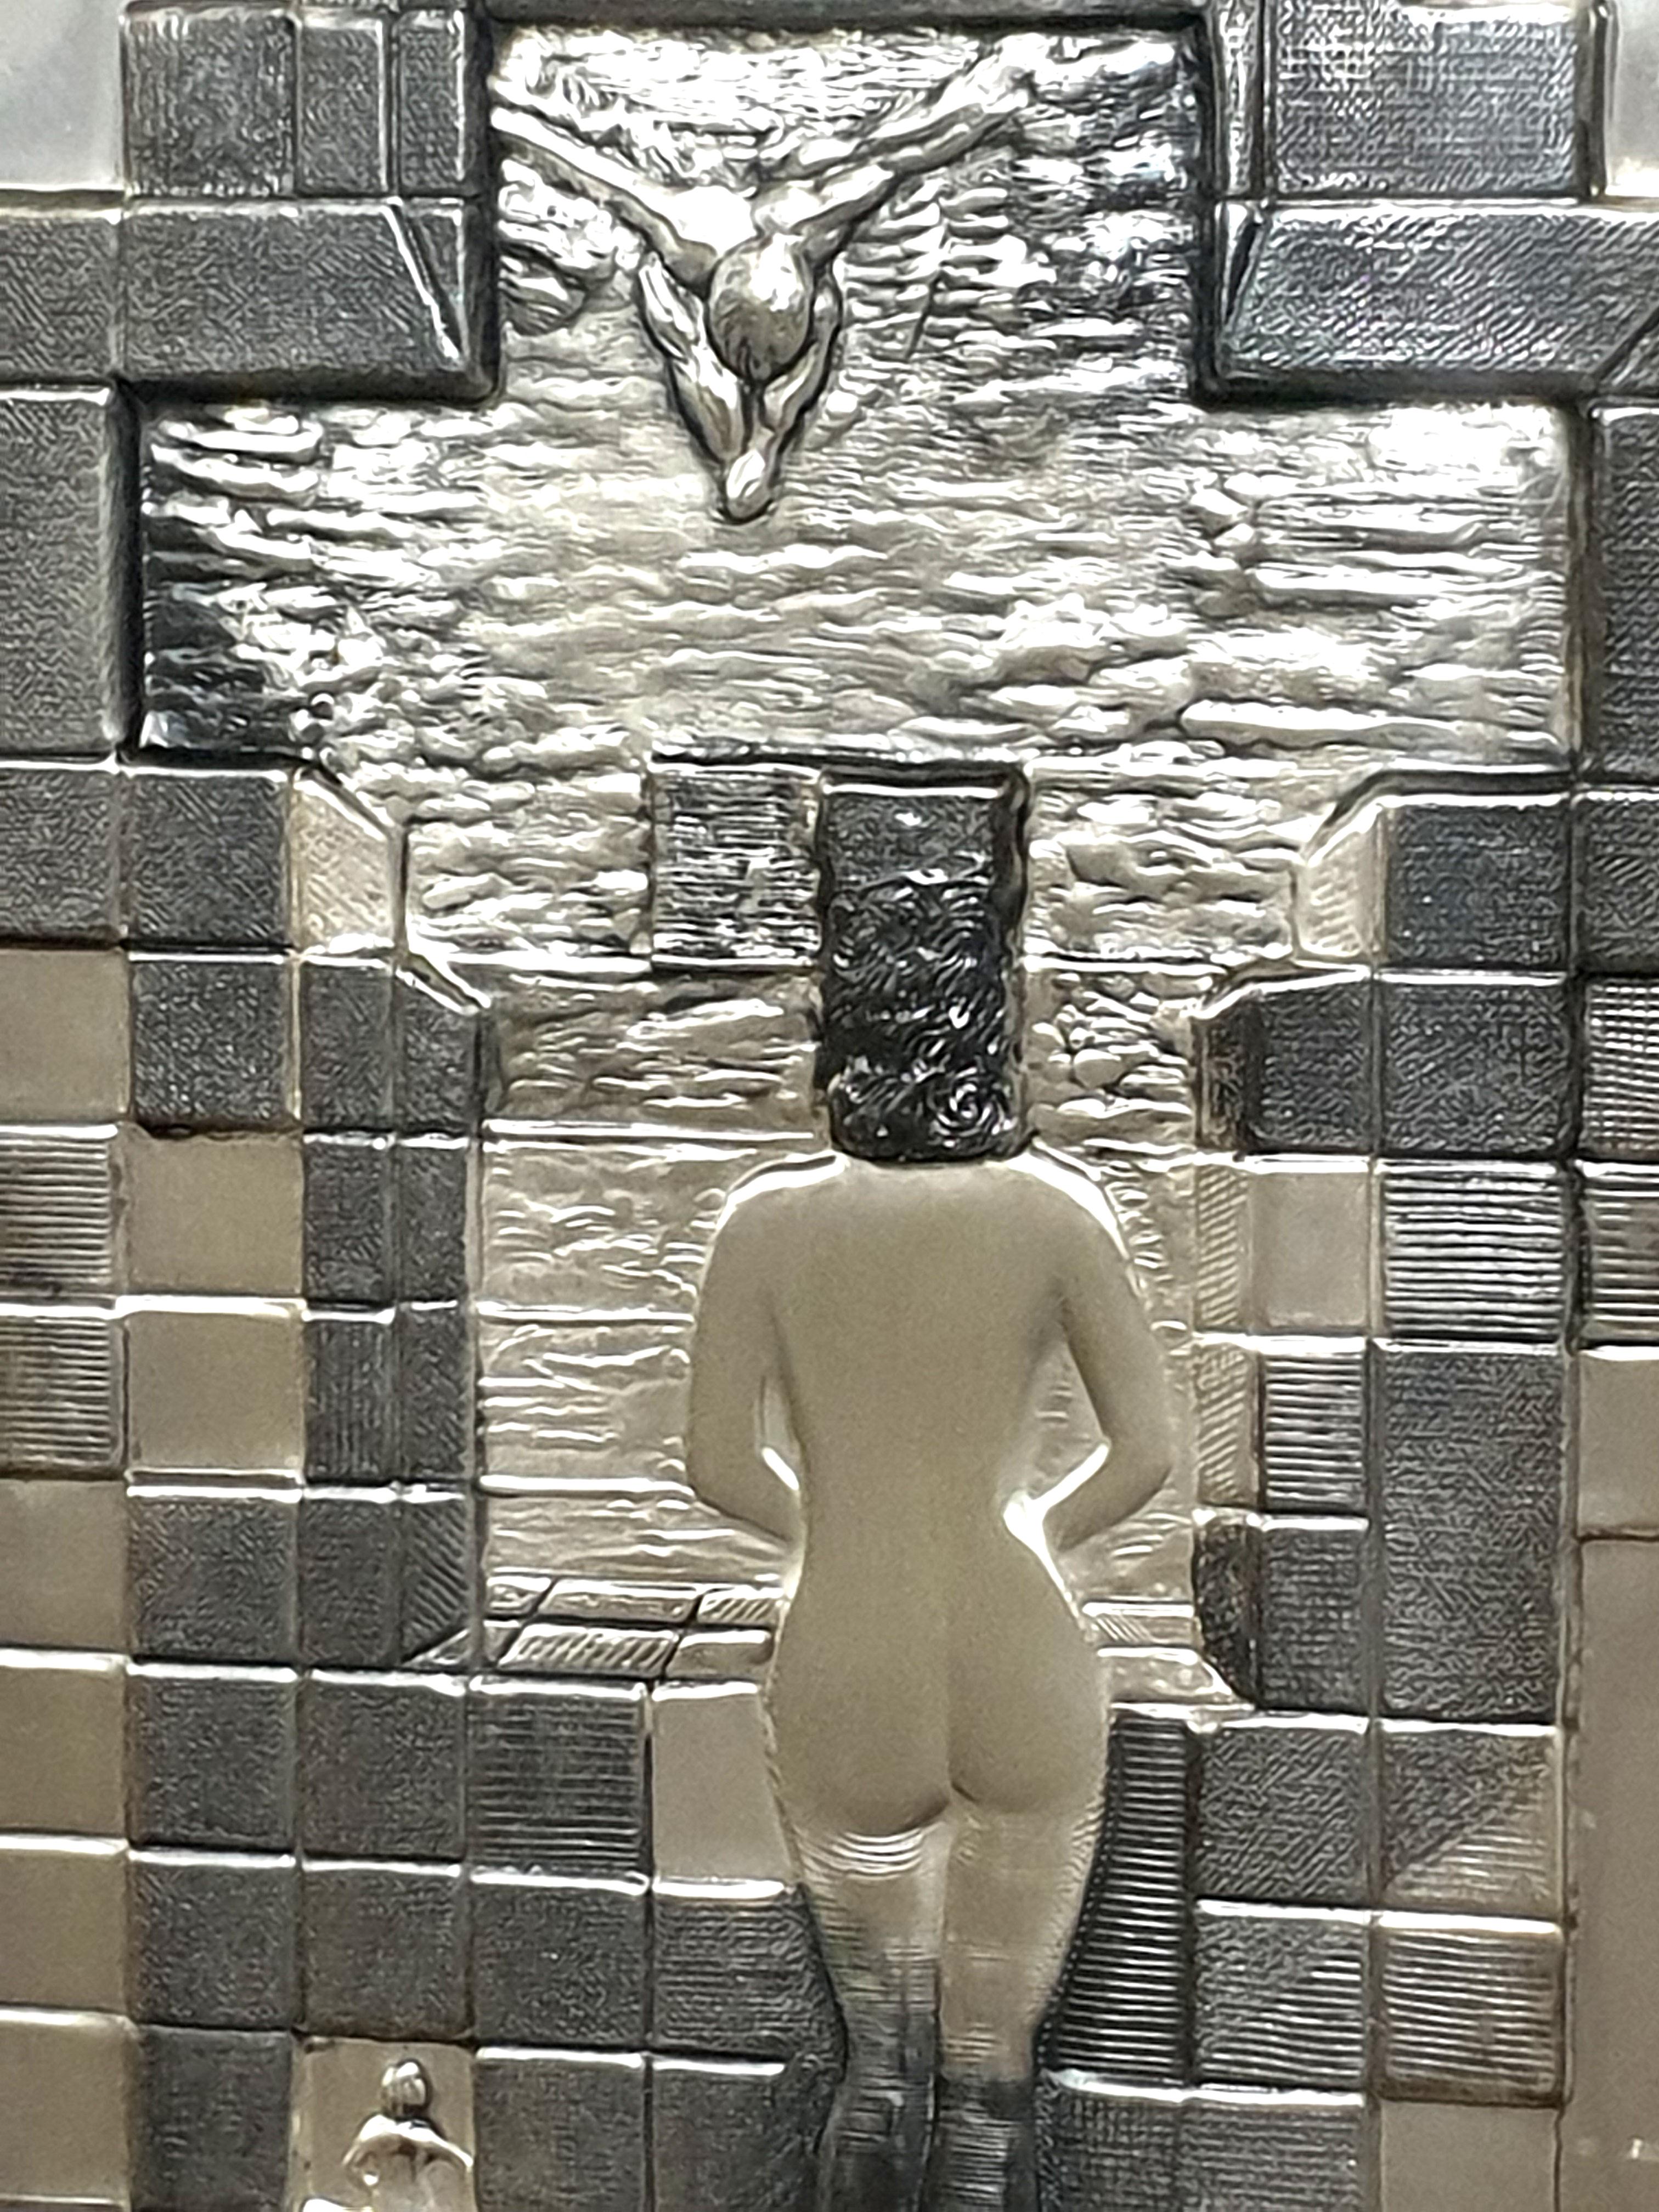 Salvador Dali - Lincoln in Dalivision - Silberne Basrelief-Skulptur
Signiert auf dem Basrelief und gedruckte Signatur auf dem Zertifikat auf der Rückseite. 
Abmessungen: 22 x 17::5 cm
Gerahmt: 38 x 33 cm
Diese Plakette in limitierter Auflage wurde